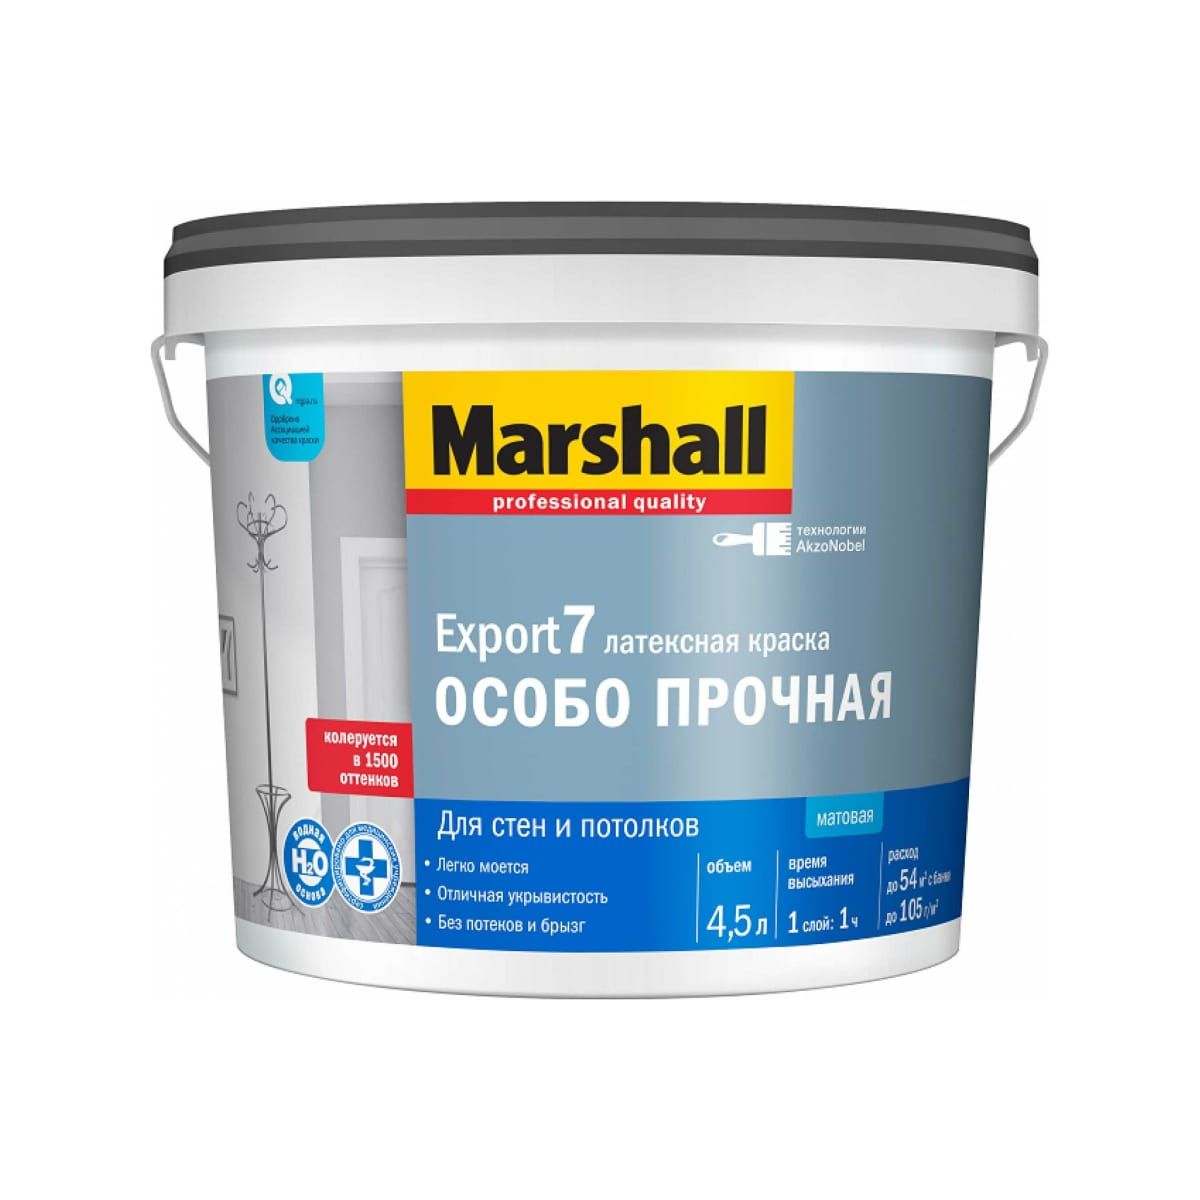 Краска Marshall Export 7 латексная, матовая, BC, 4,5 л краска marshall export 2 латексная глубокоматовая база bw 2 5 л